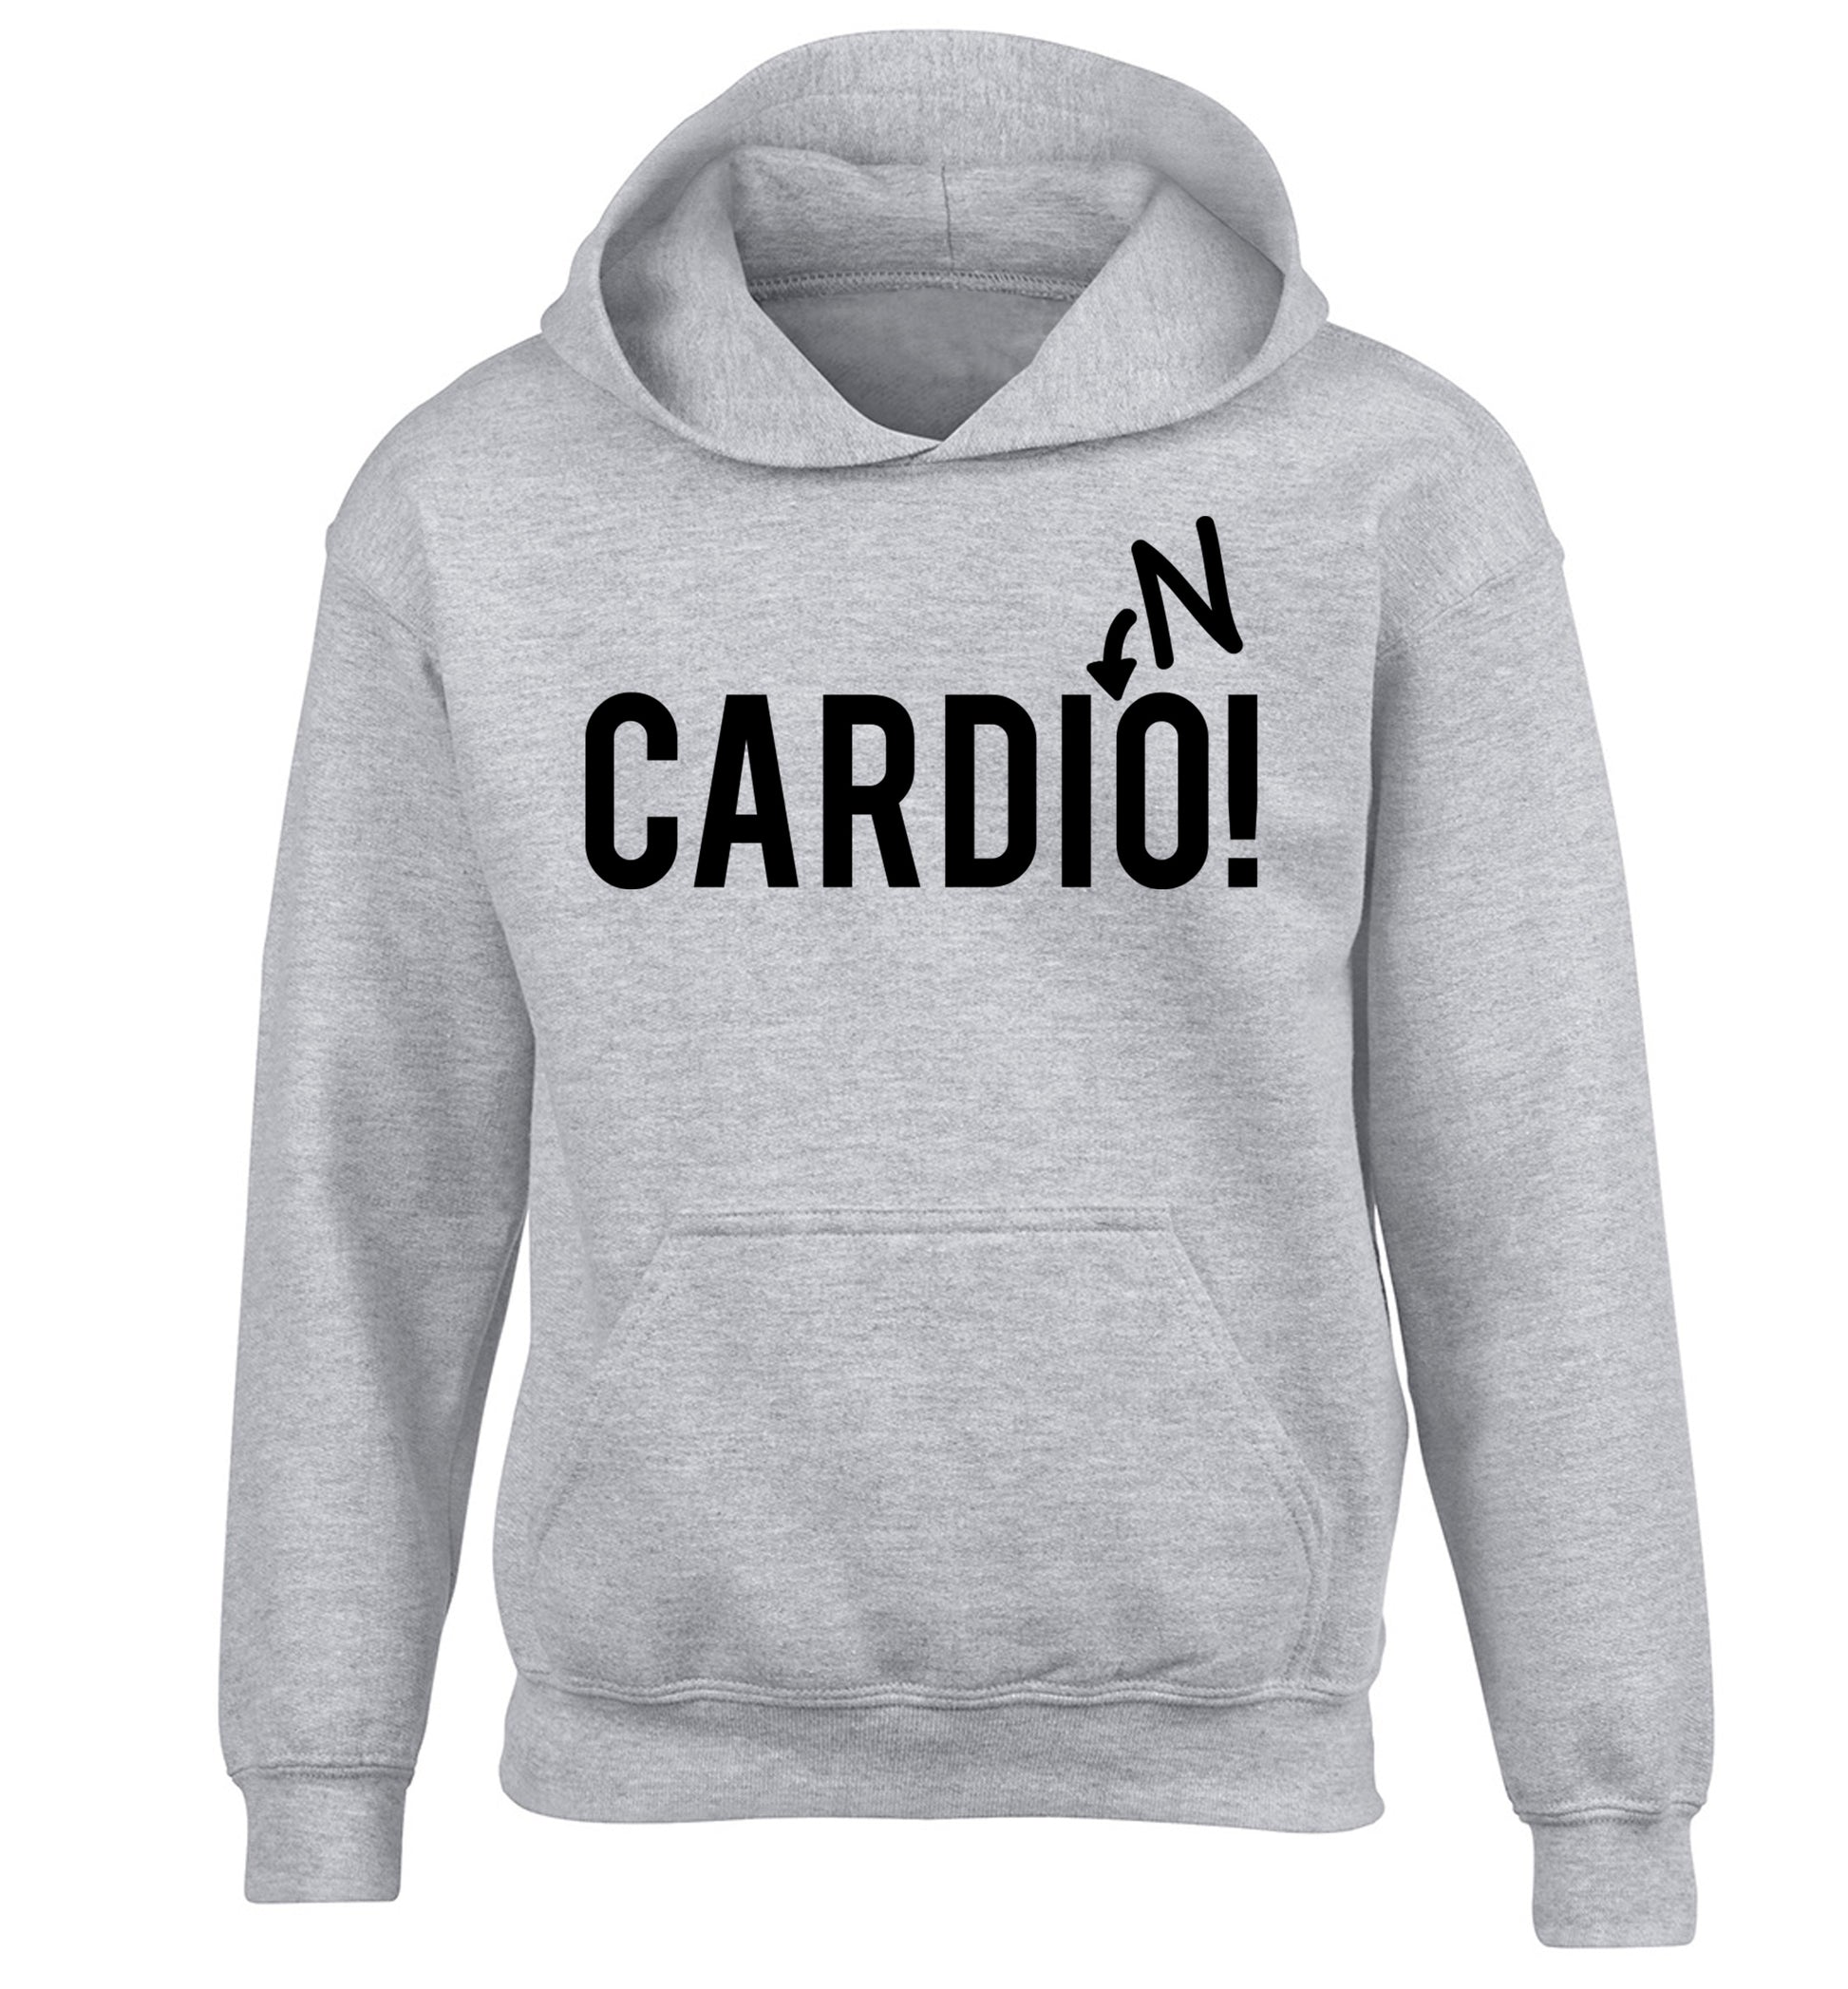 Cardino children's grey hoodie 12-14 Years